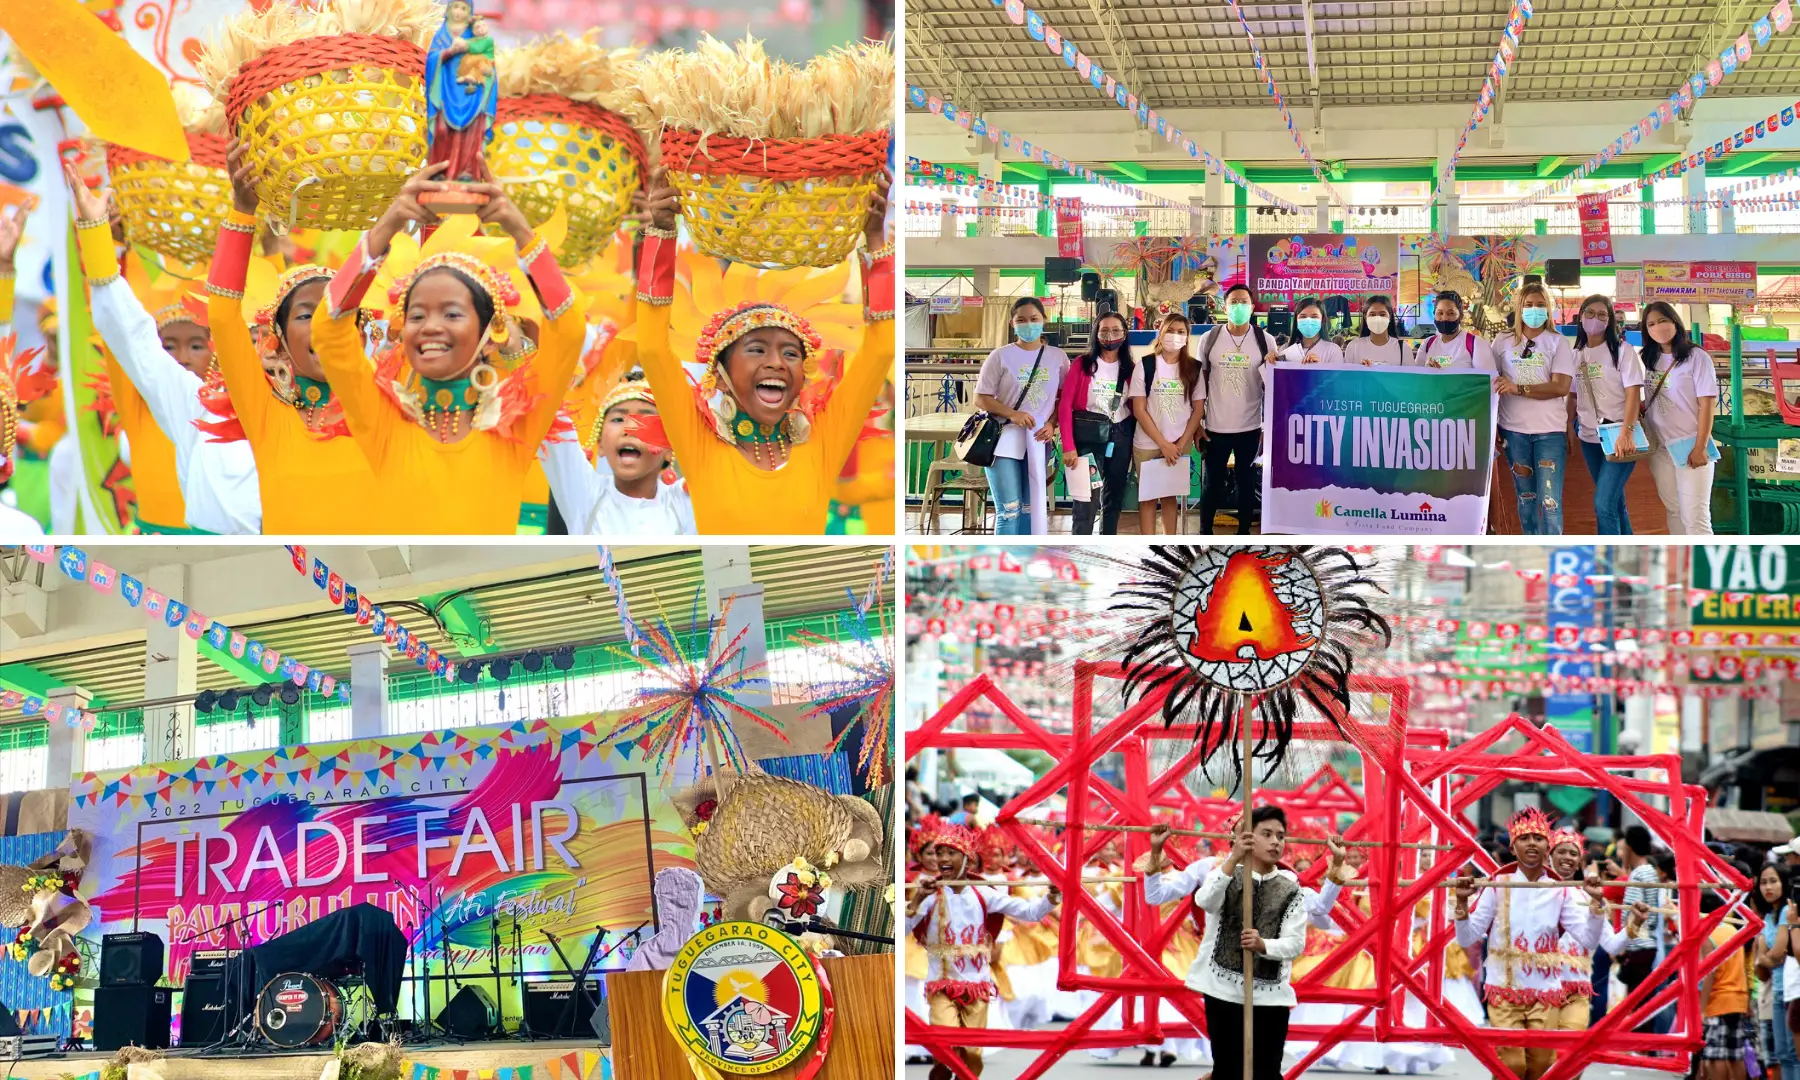 cagayan valley festivals